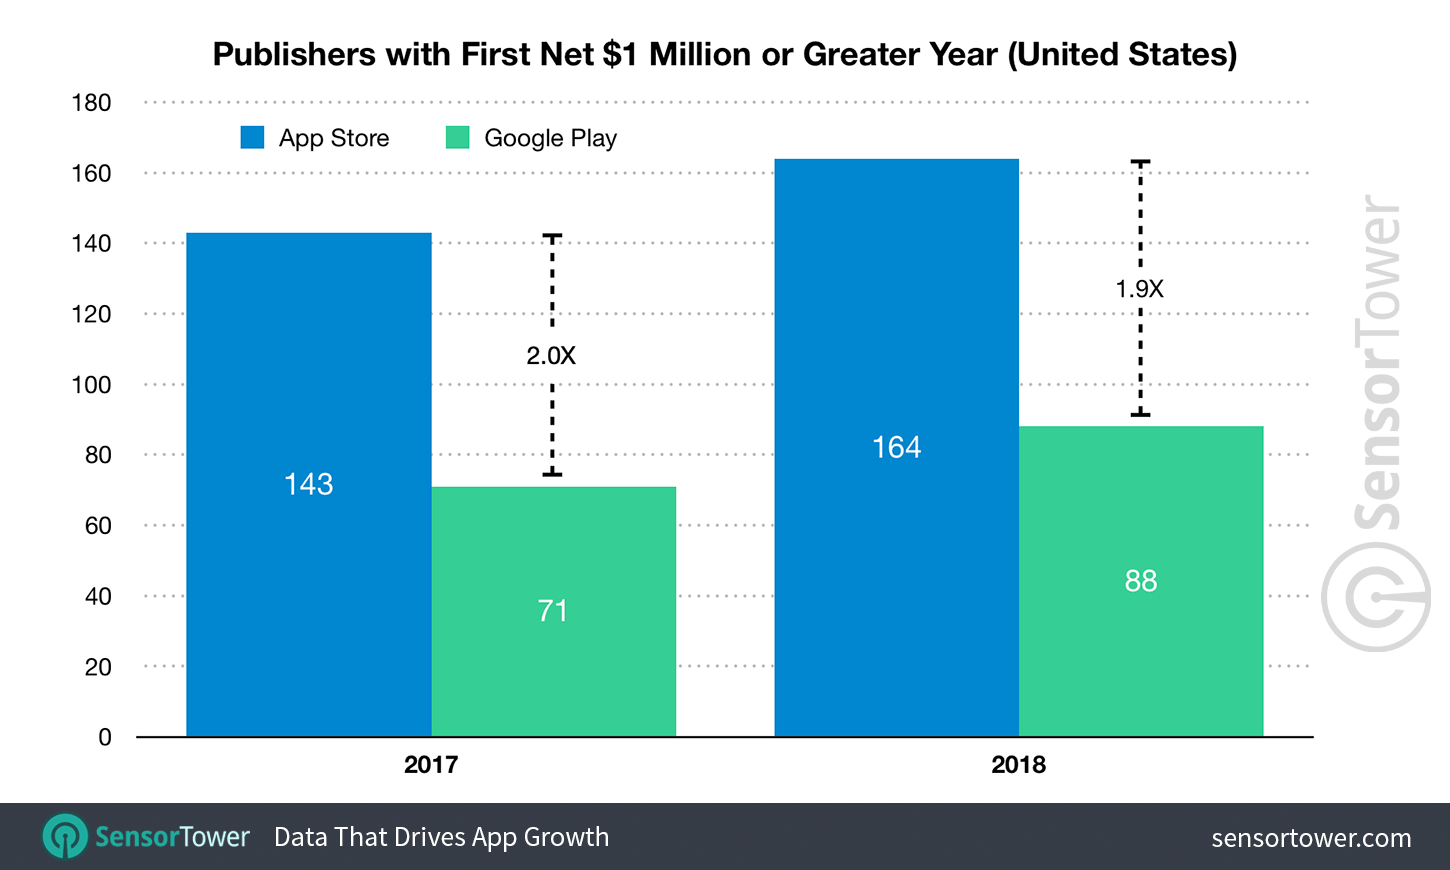 Liczba wydawców aplikacji mobilnych z pierwszym 1 mln USD w sklepach App Store i Google Play (2017 vs 2018)